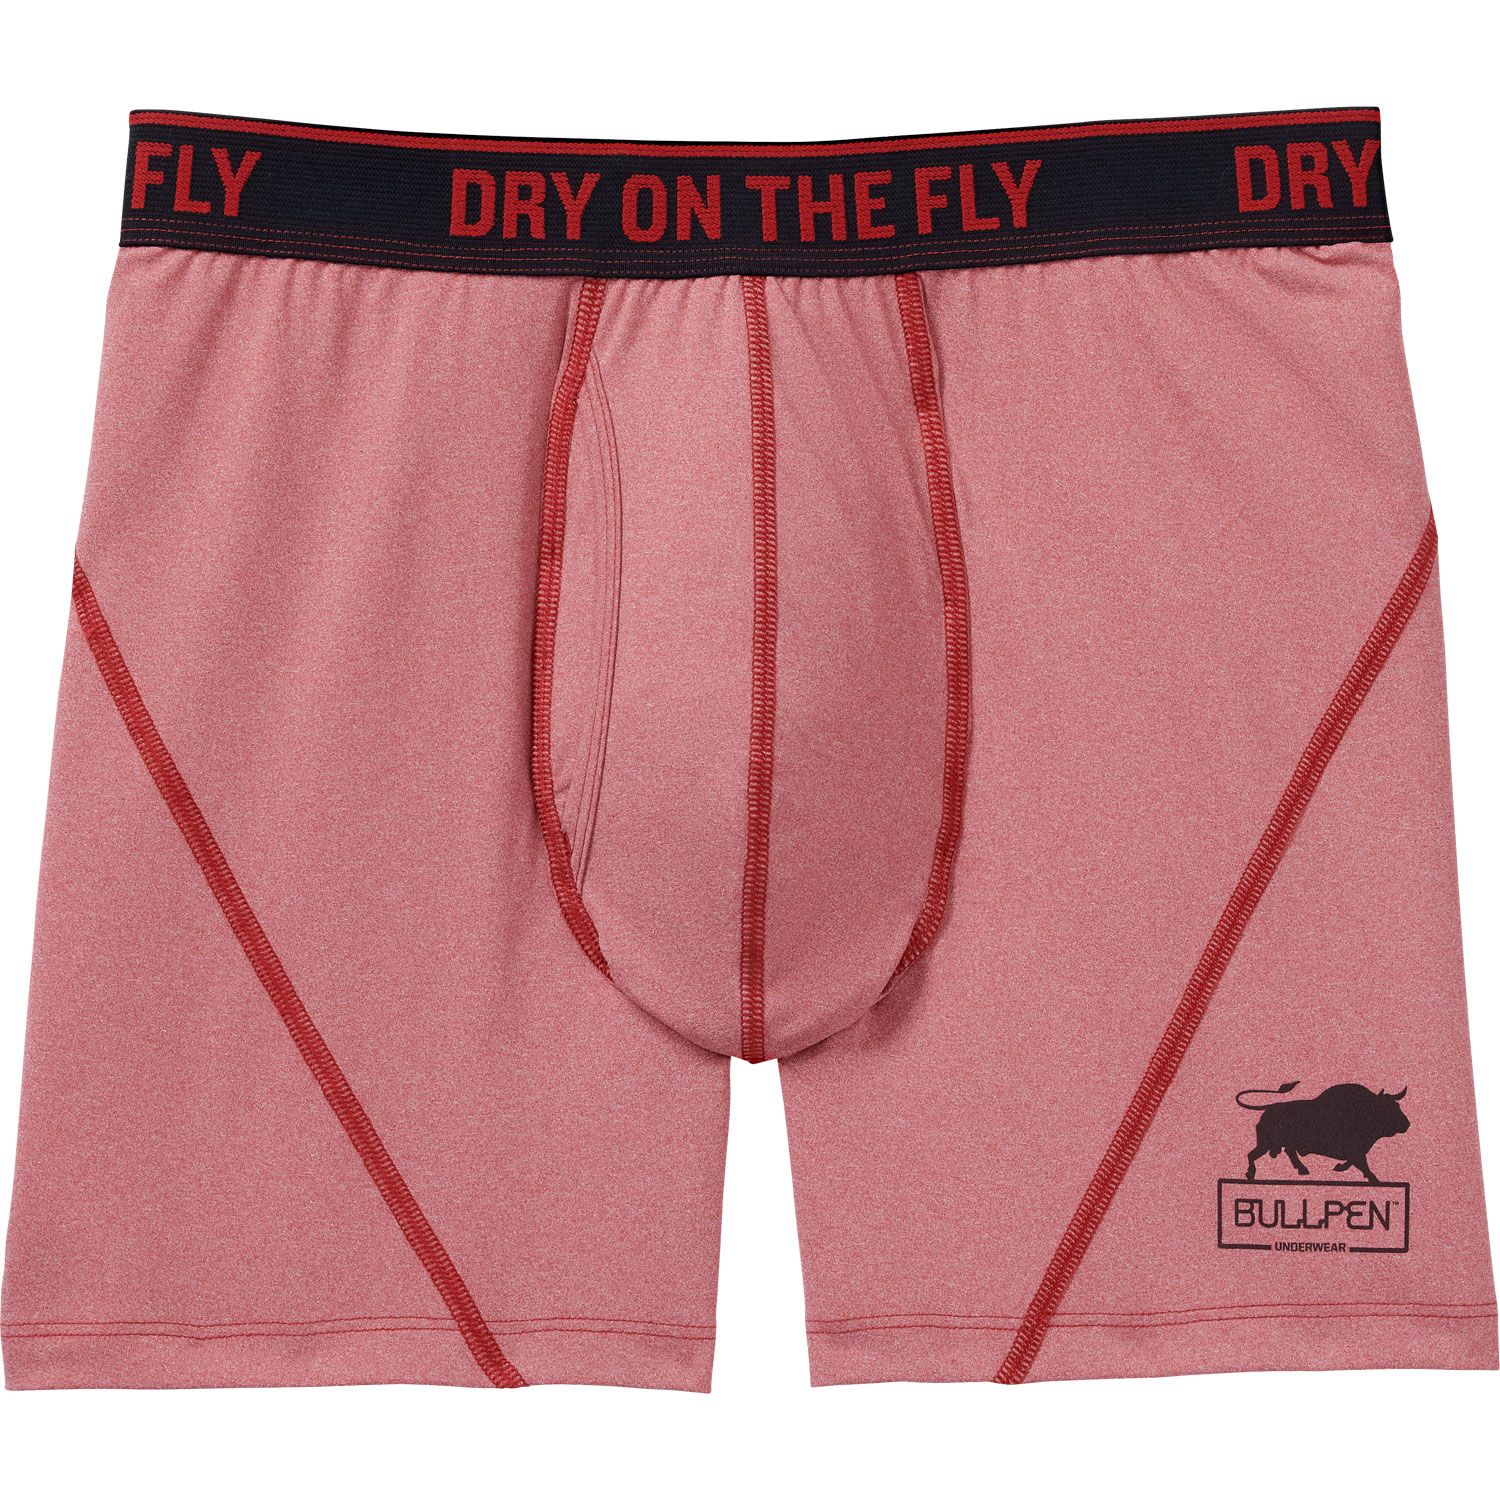 Men's Dry on the Fly Bullpen Boxer Briefs